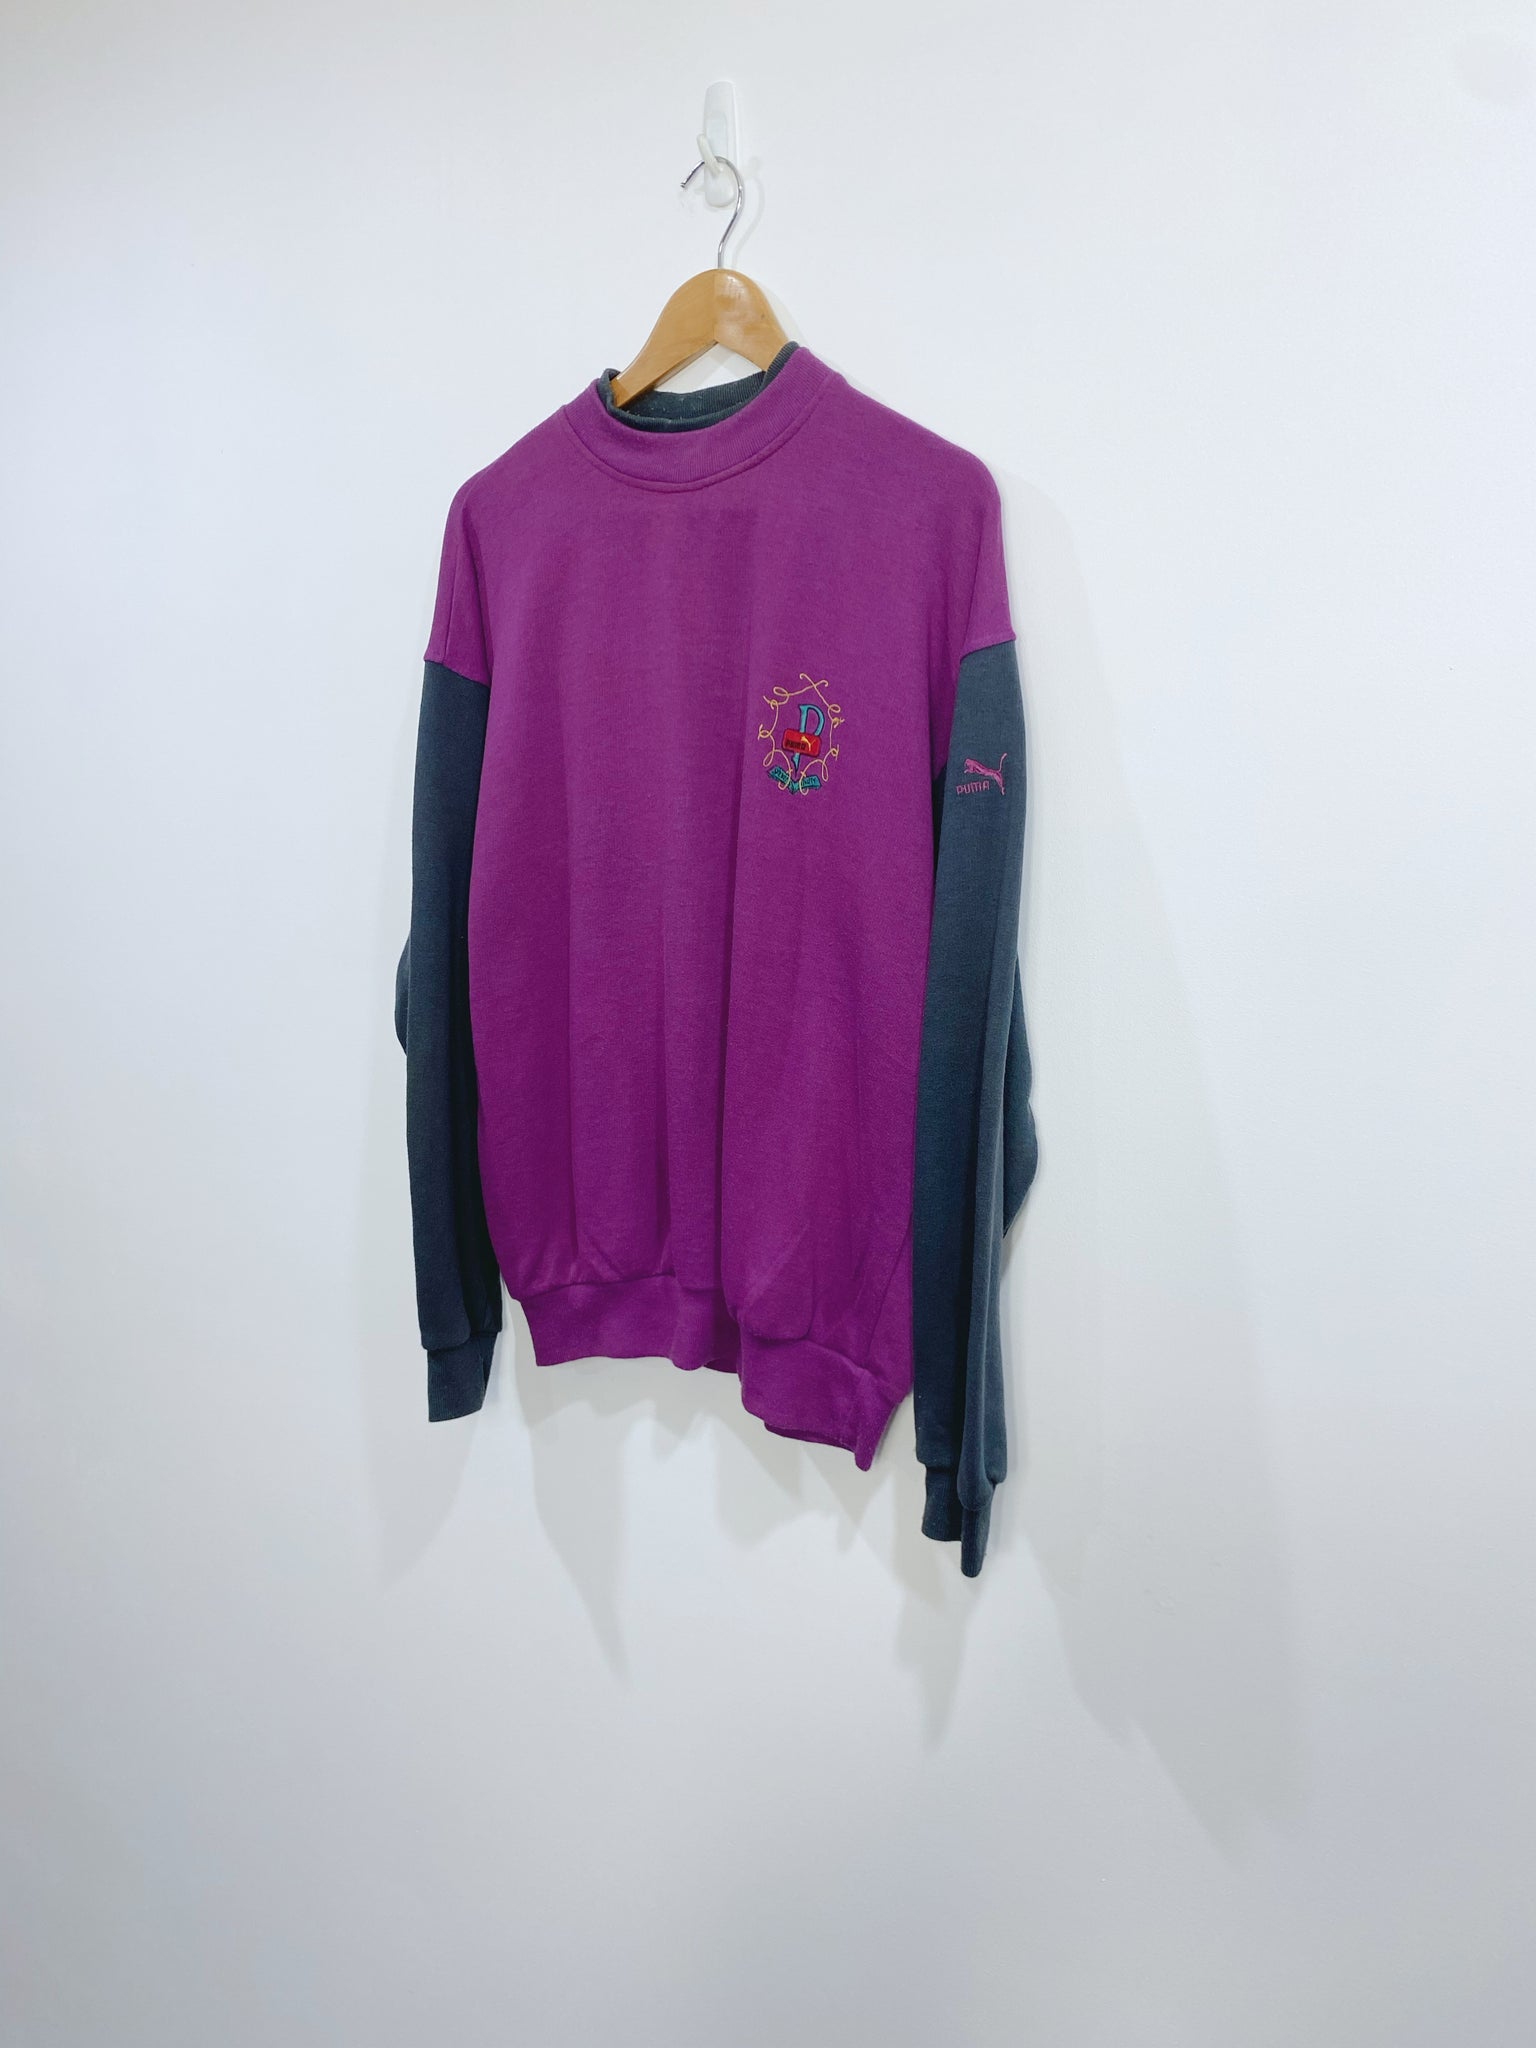 Vintage 90s Puma Embroidered Sweatshirt L